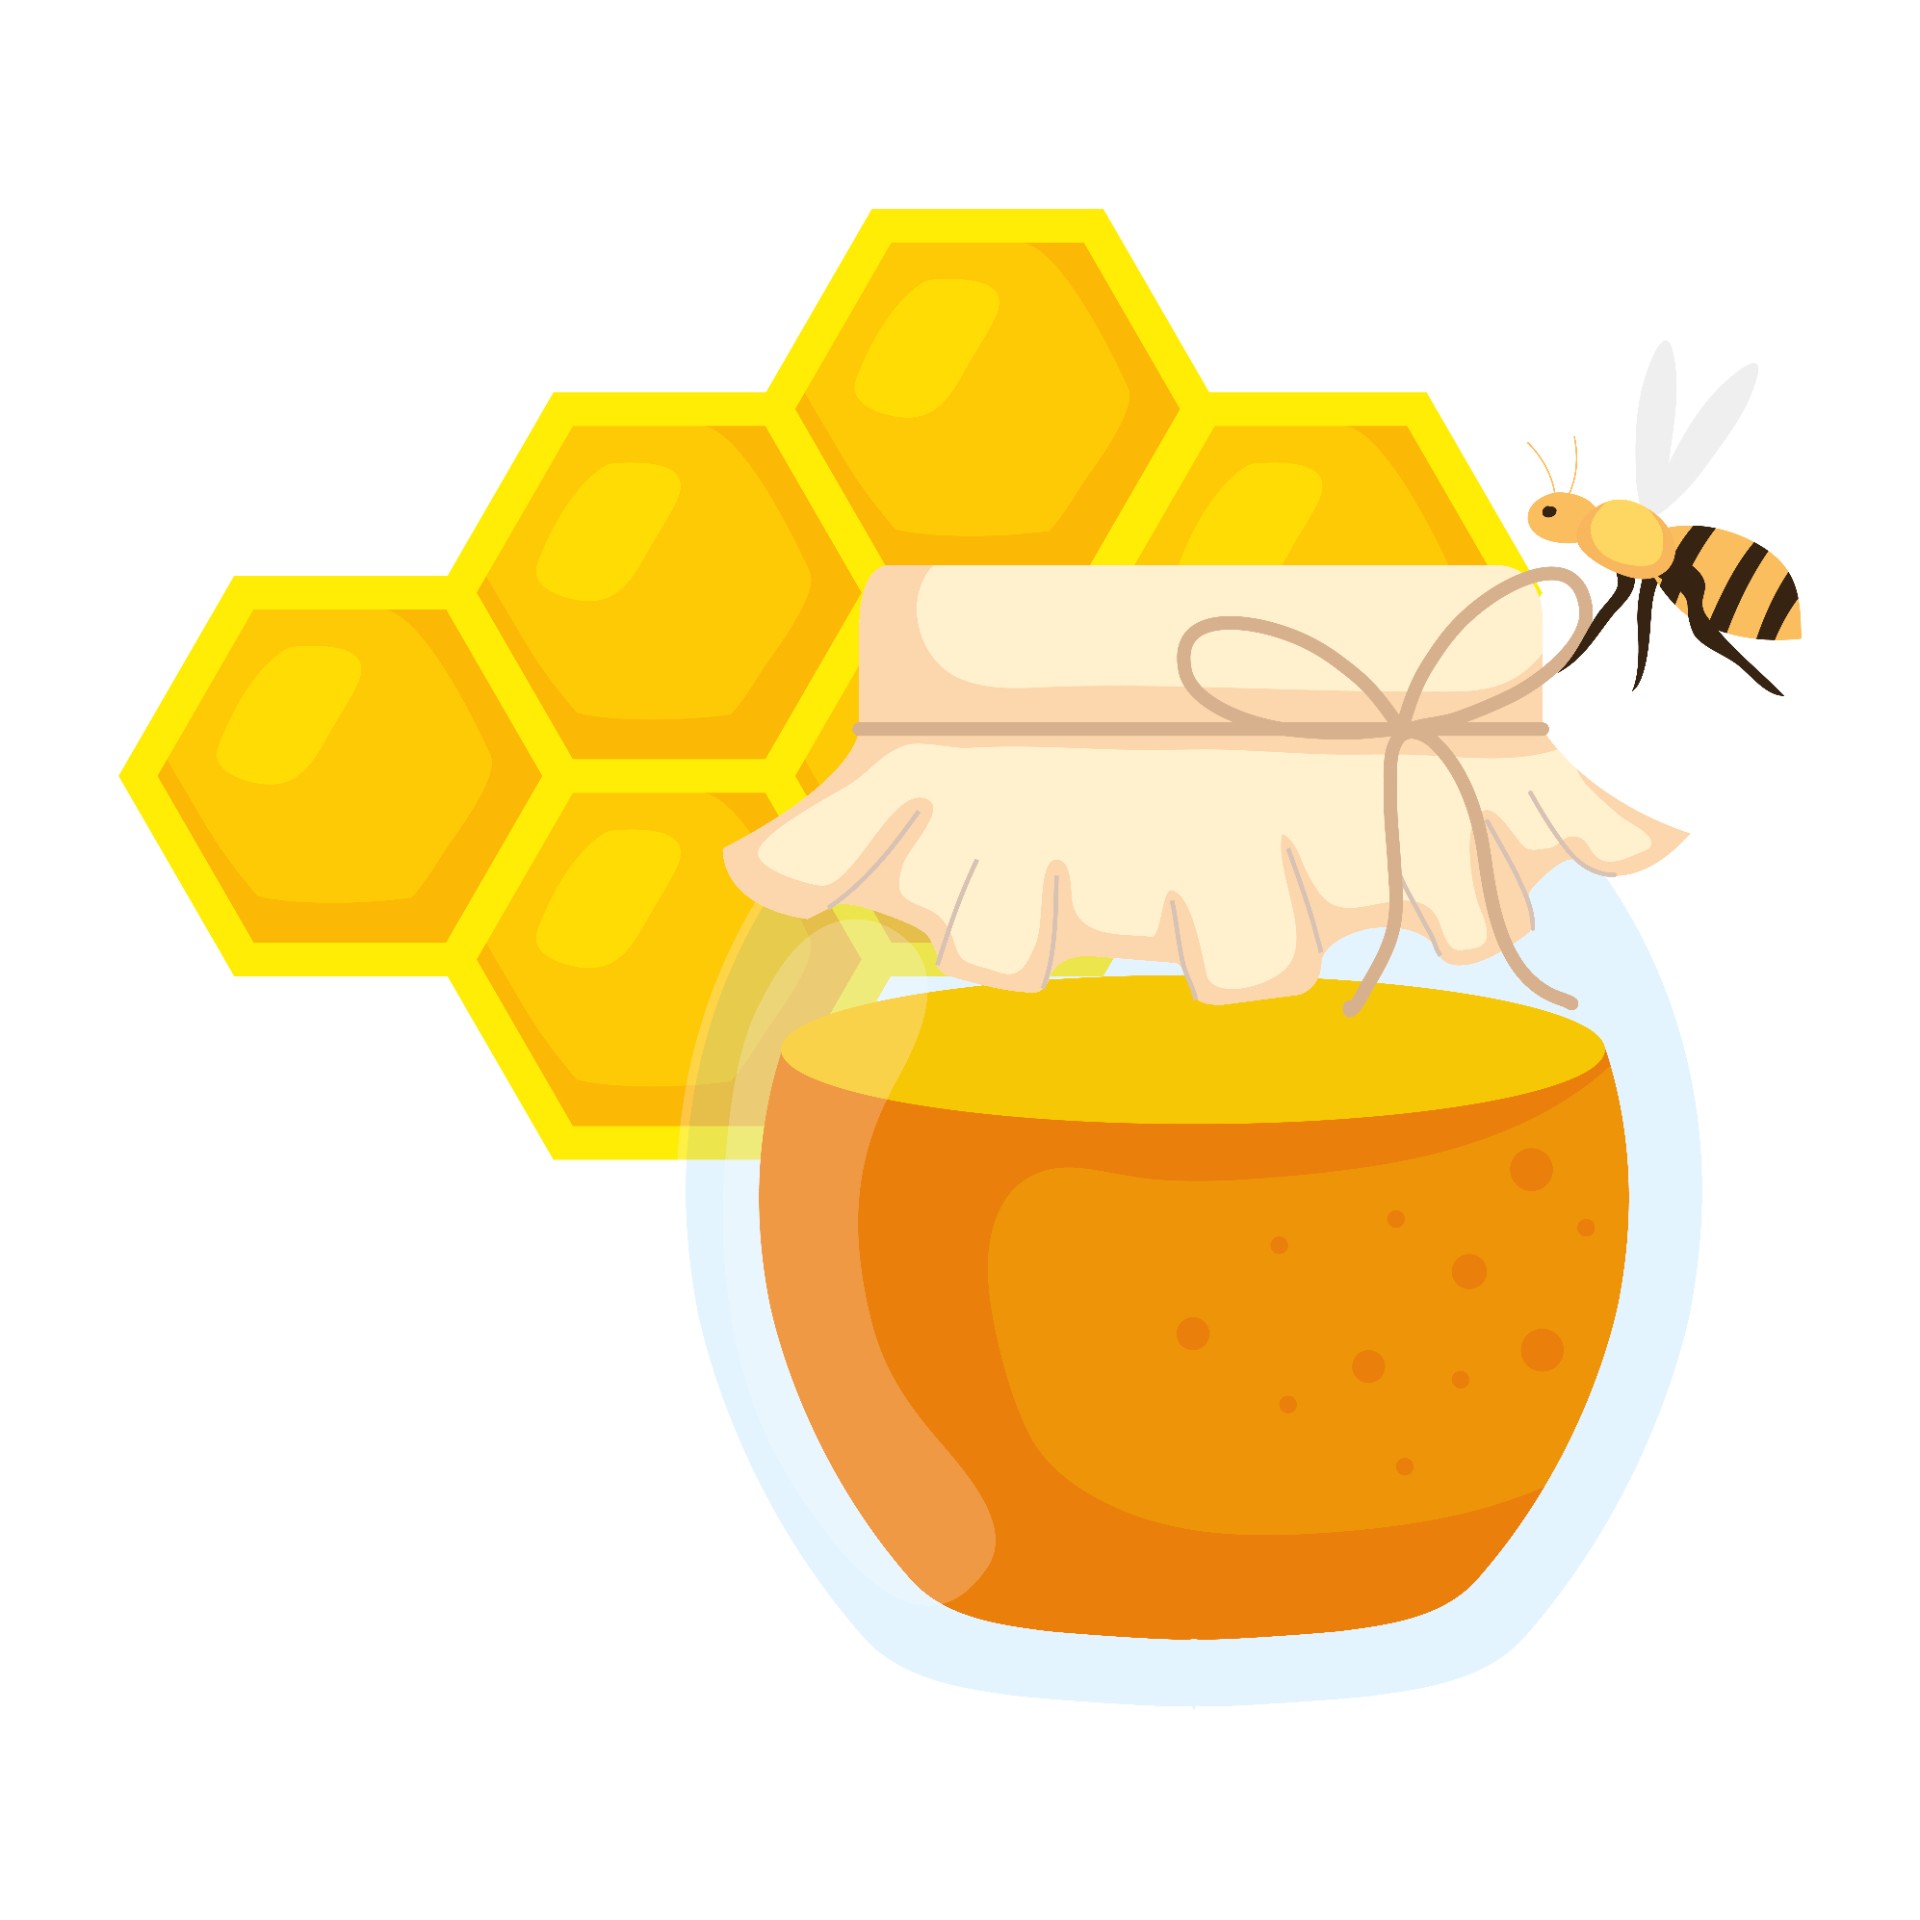 蜂巢与蜜蜂和蜂蜜罐插图0